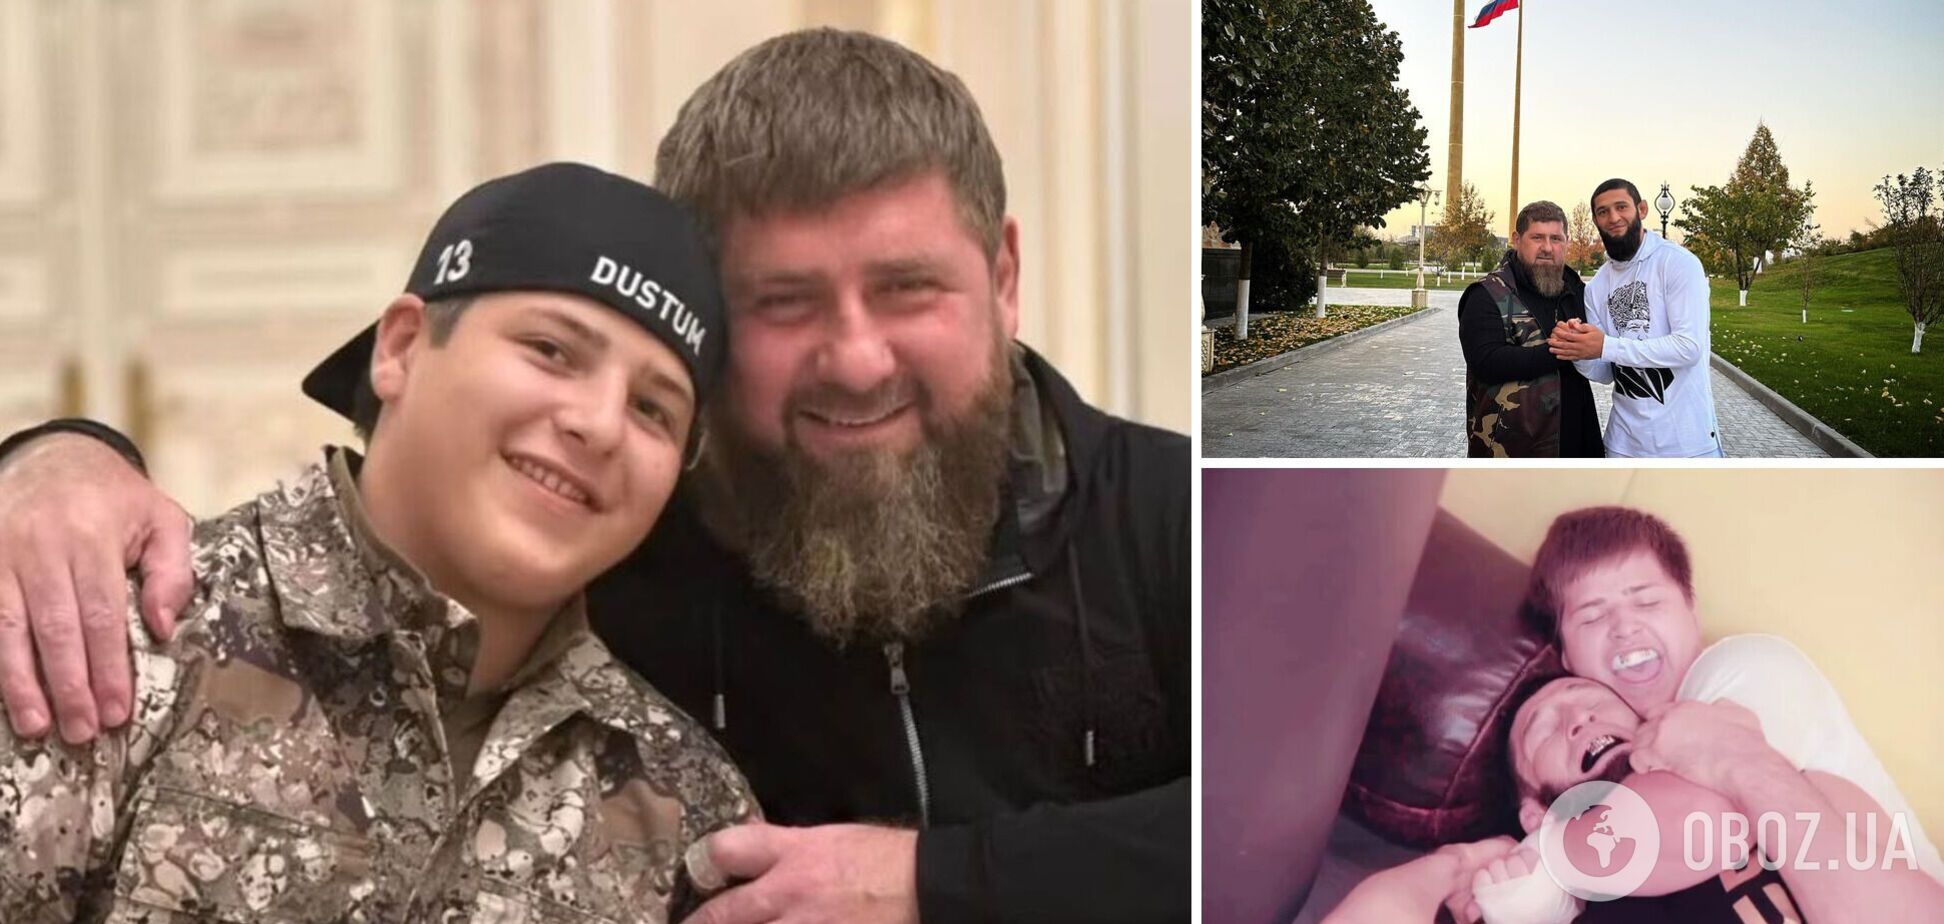 'Позорище' и 'Гребаное шапито'. 15-летний сын Кадырова 'задушил' непобедимого бойца и стал посмешищем в сети